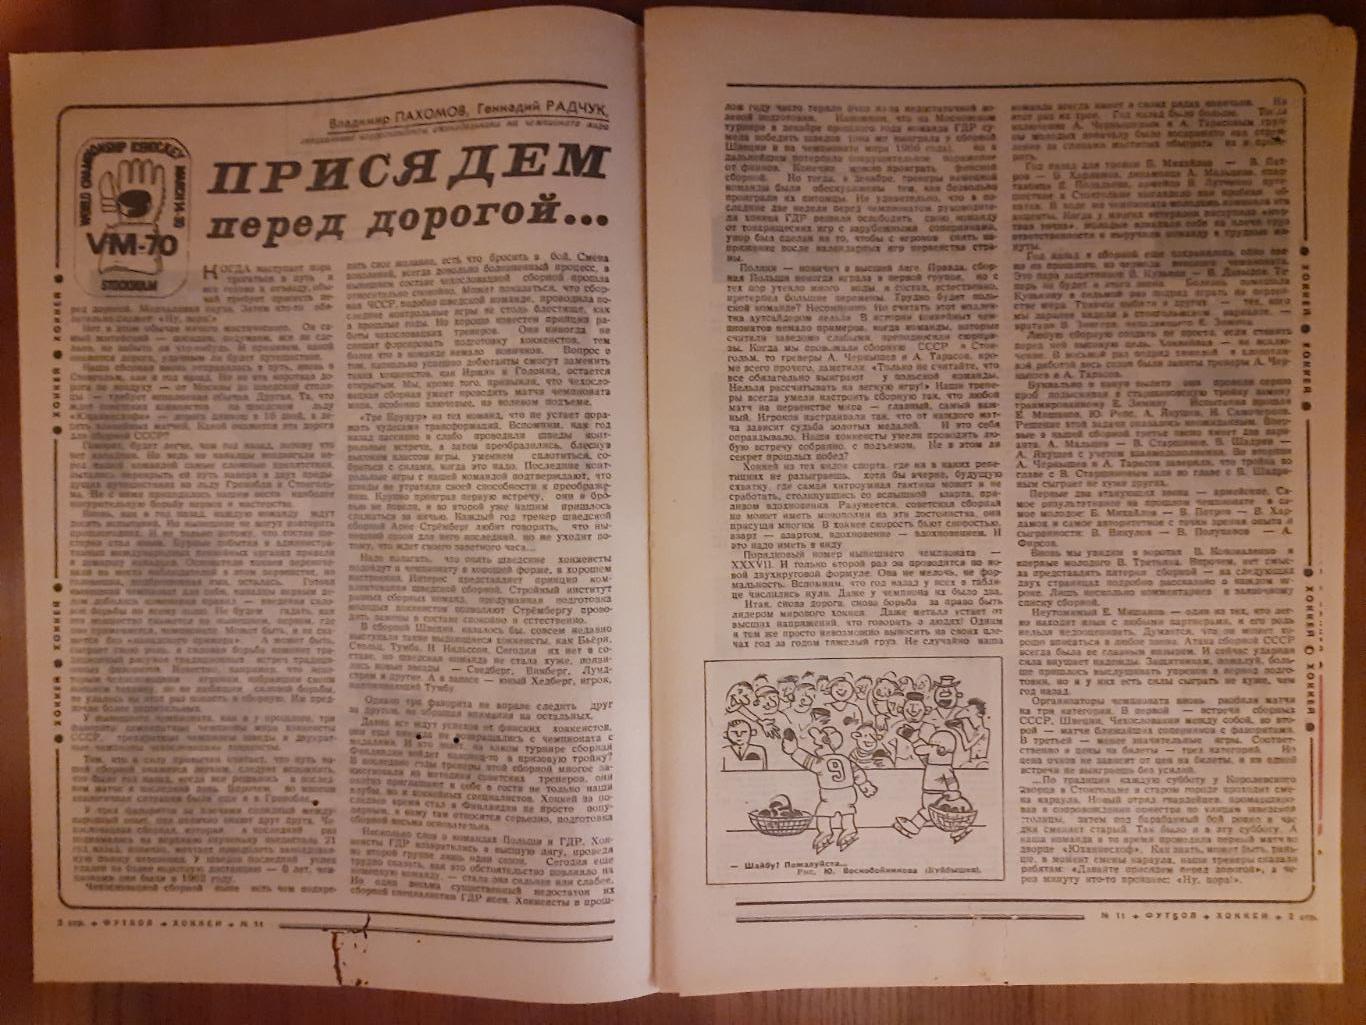 еженедельник футбол-хоккей #11,1970 1